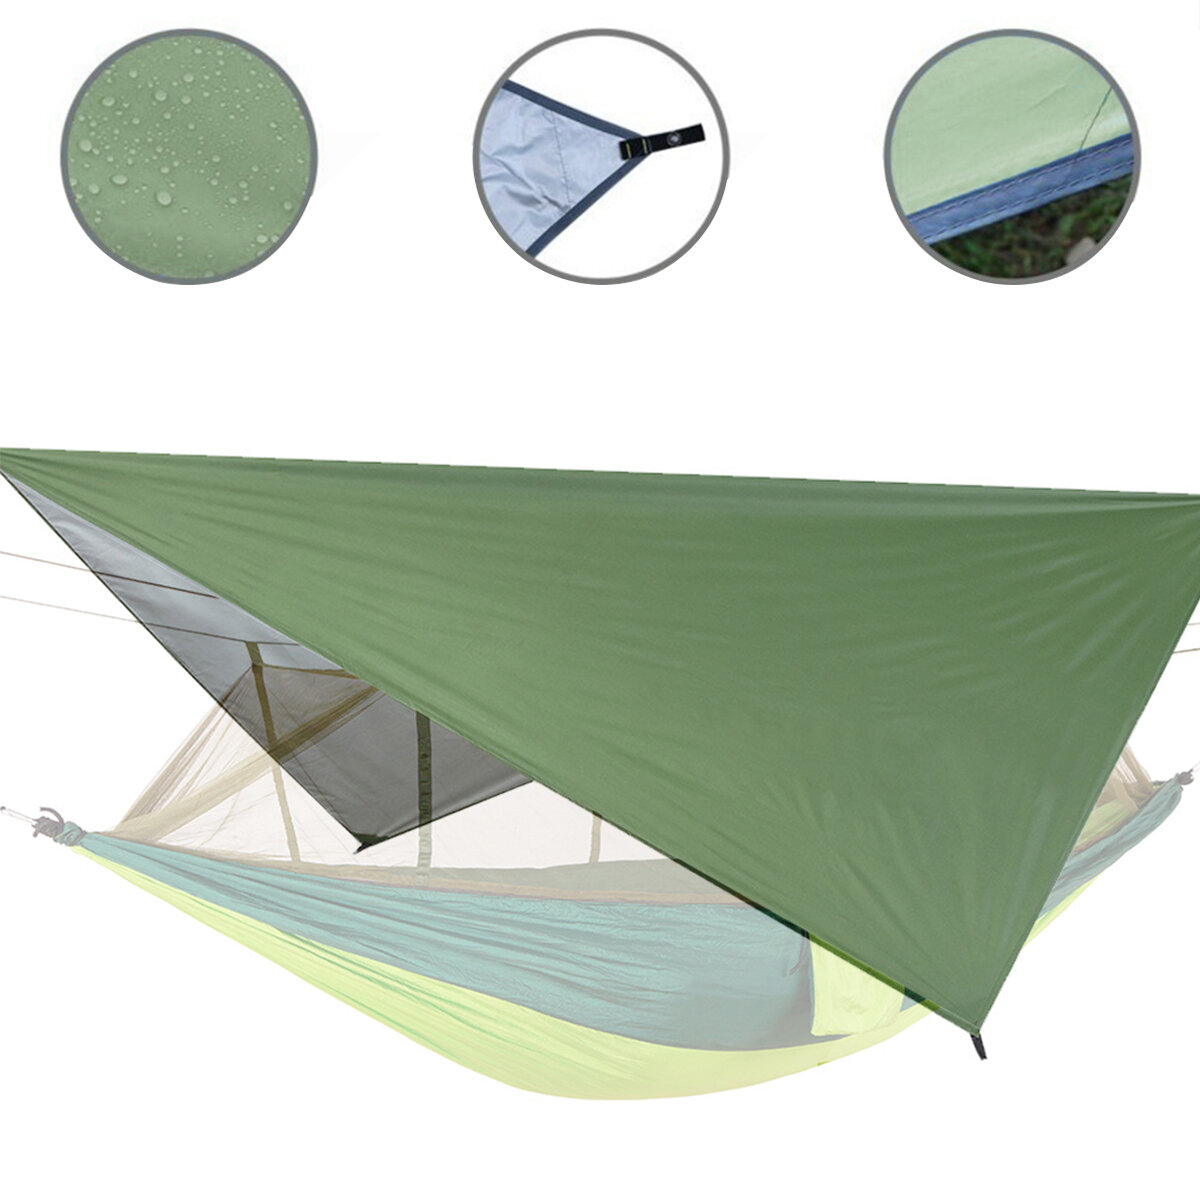 IPRee® 122x122 дюймовый наружный тент для патио, водонепроницаемый, палатка для кемпинга, пикник, многофункциональный навес от солнца